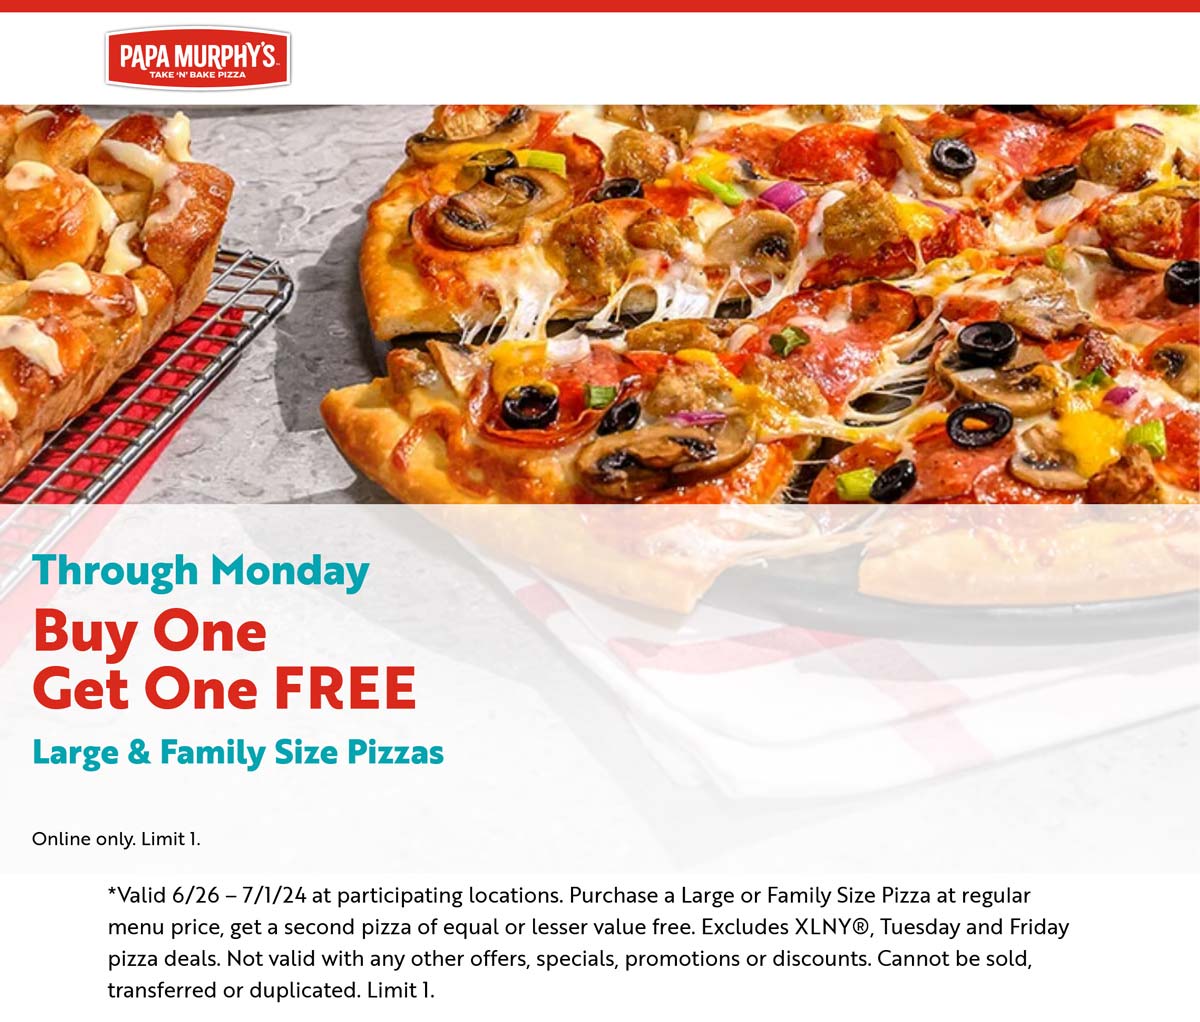 Papa Murphys restaurants Coupon  Second large pizza free online at Papa Murphys #papamurphys 